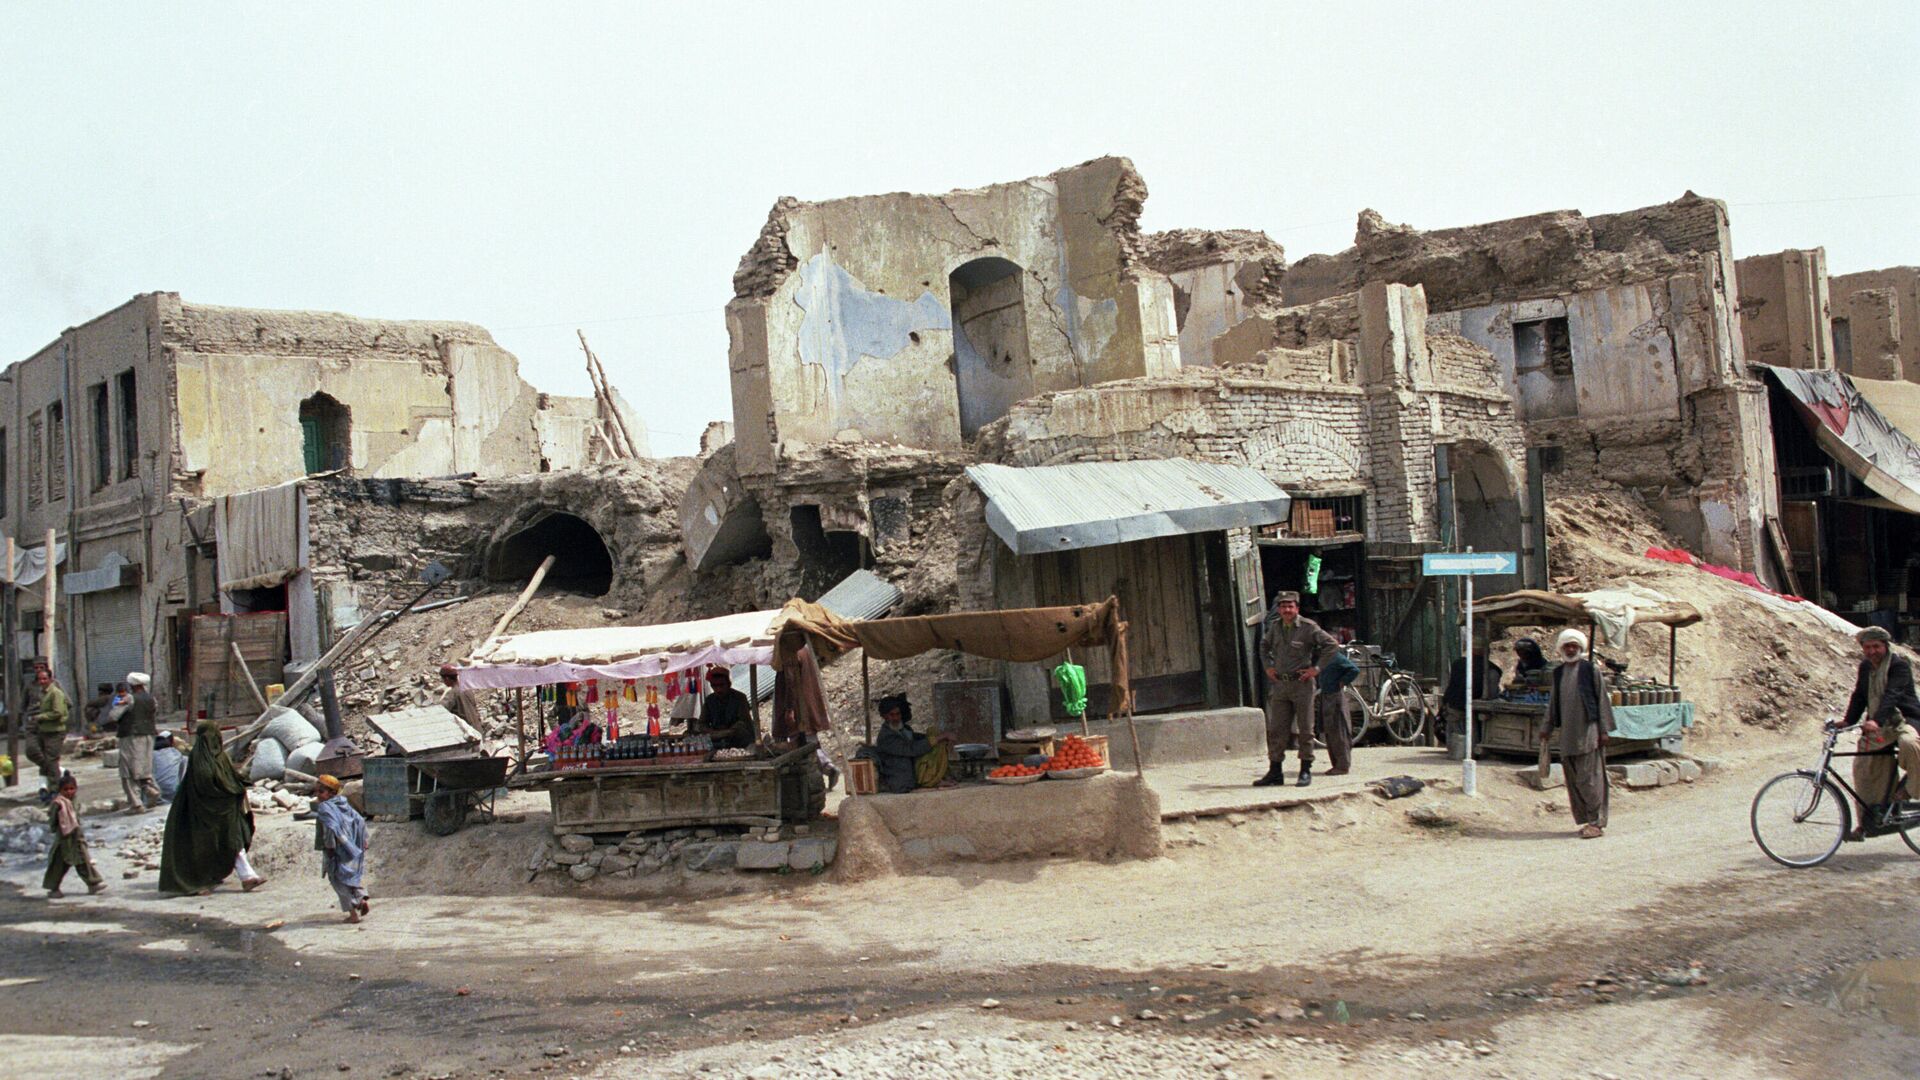 Улица Герата, разрушенная в результате артобстрела экстремистами. Республика Афганистан  - РИА Новости, 1920, 17.04.2021